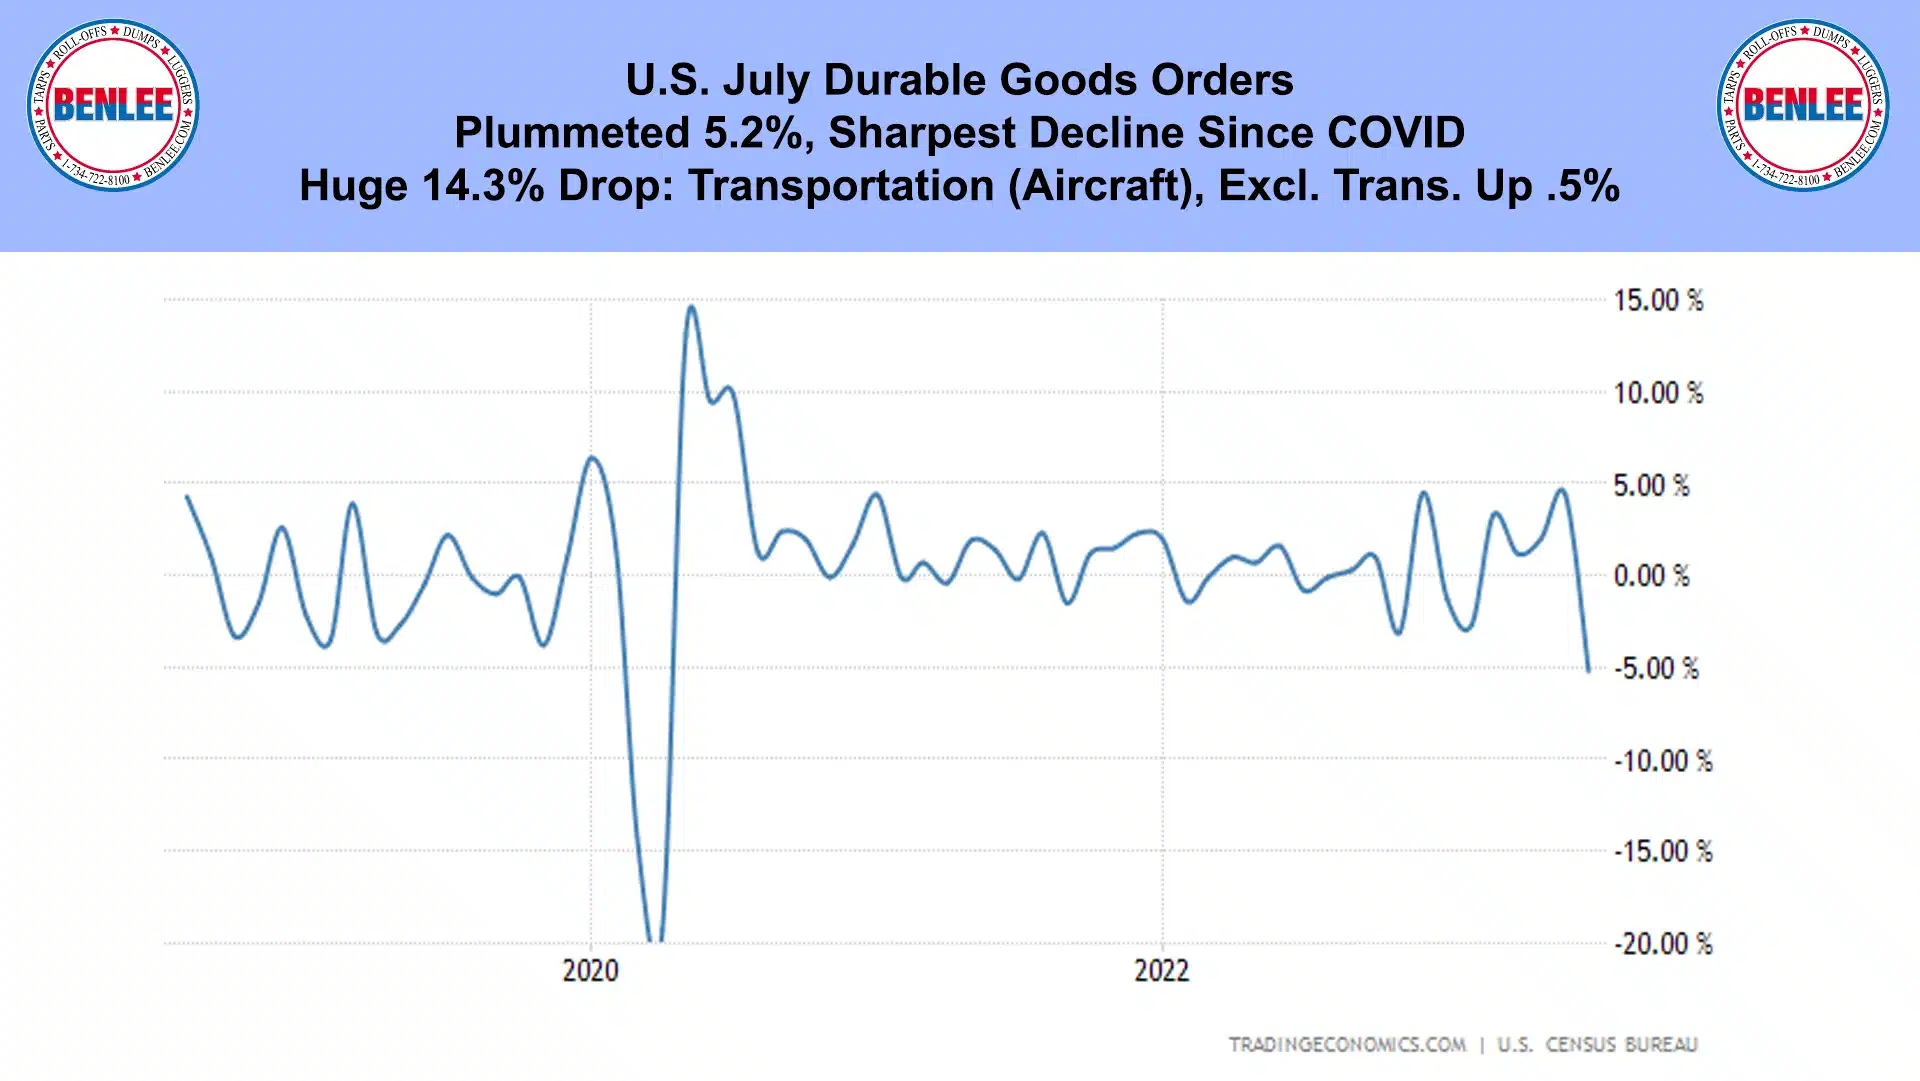 U.S. July Durable Goods Orders